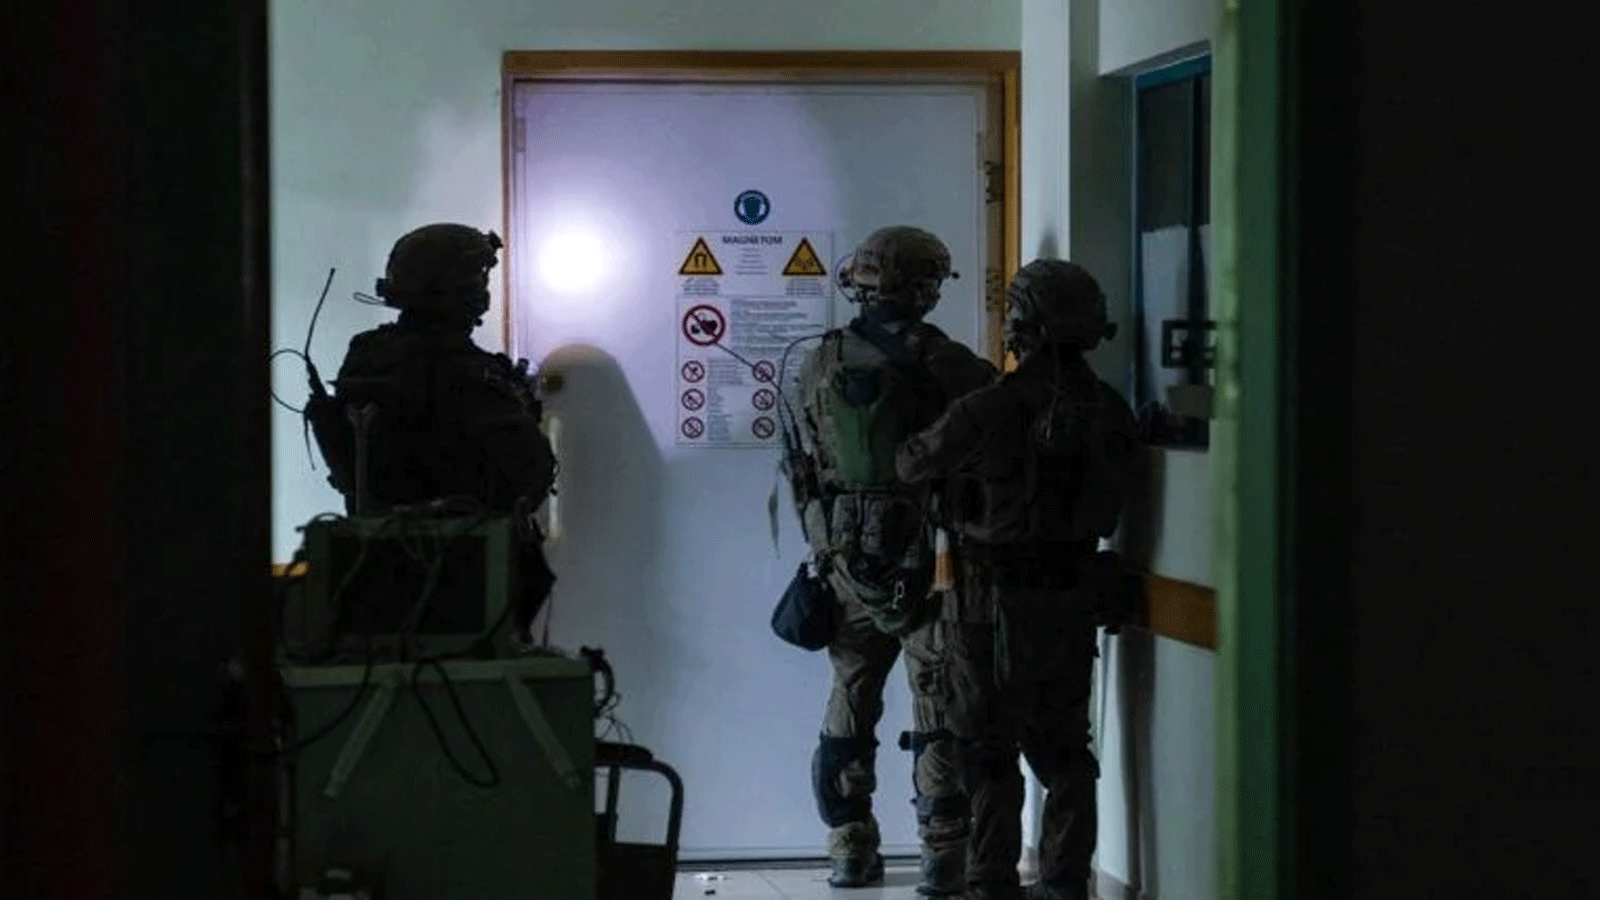 صورة نشرها الجيش الإسرائيلي في 15 نوفمبر(تشرين الثاني) 2023، تظهر جنودا إسرائيليين ينفذون عمليات داخل مستشفى الشفاء في مدينة غزة، وسط معارك مستمرة بين إسرائيل وحركة حماس الفلسطينية